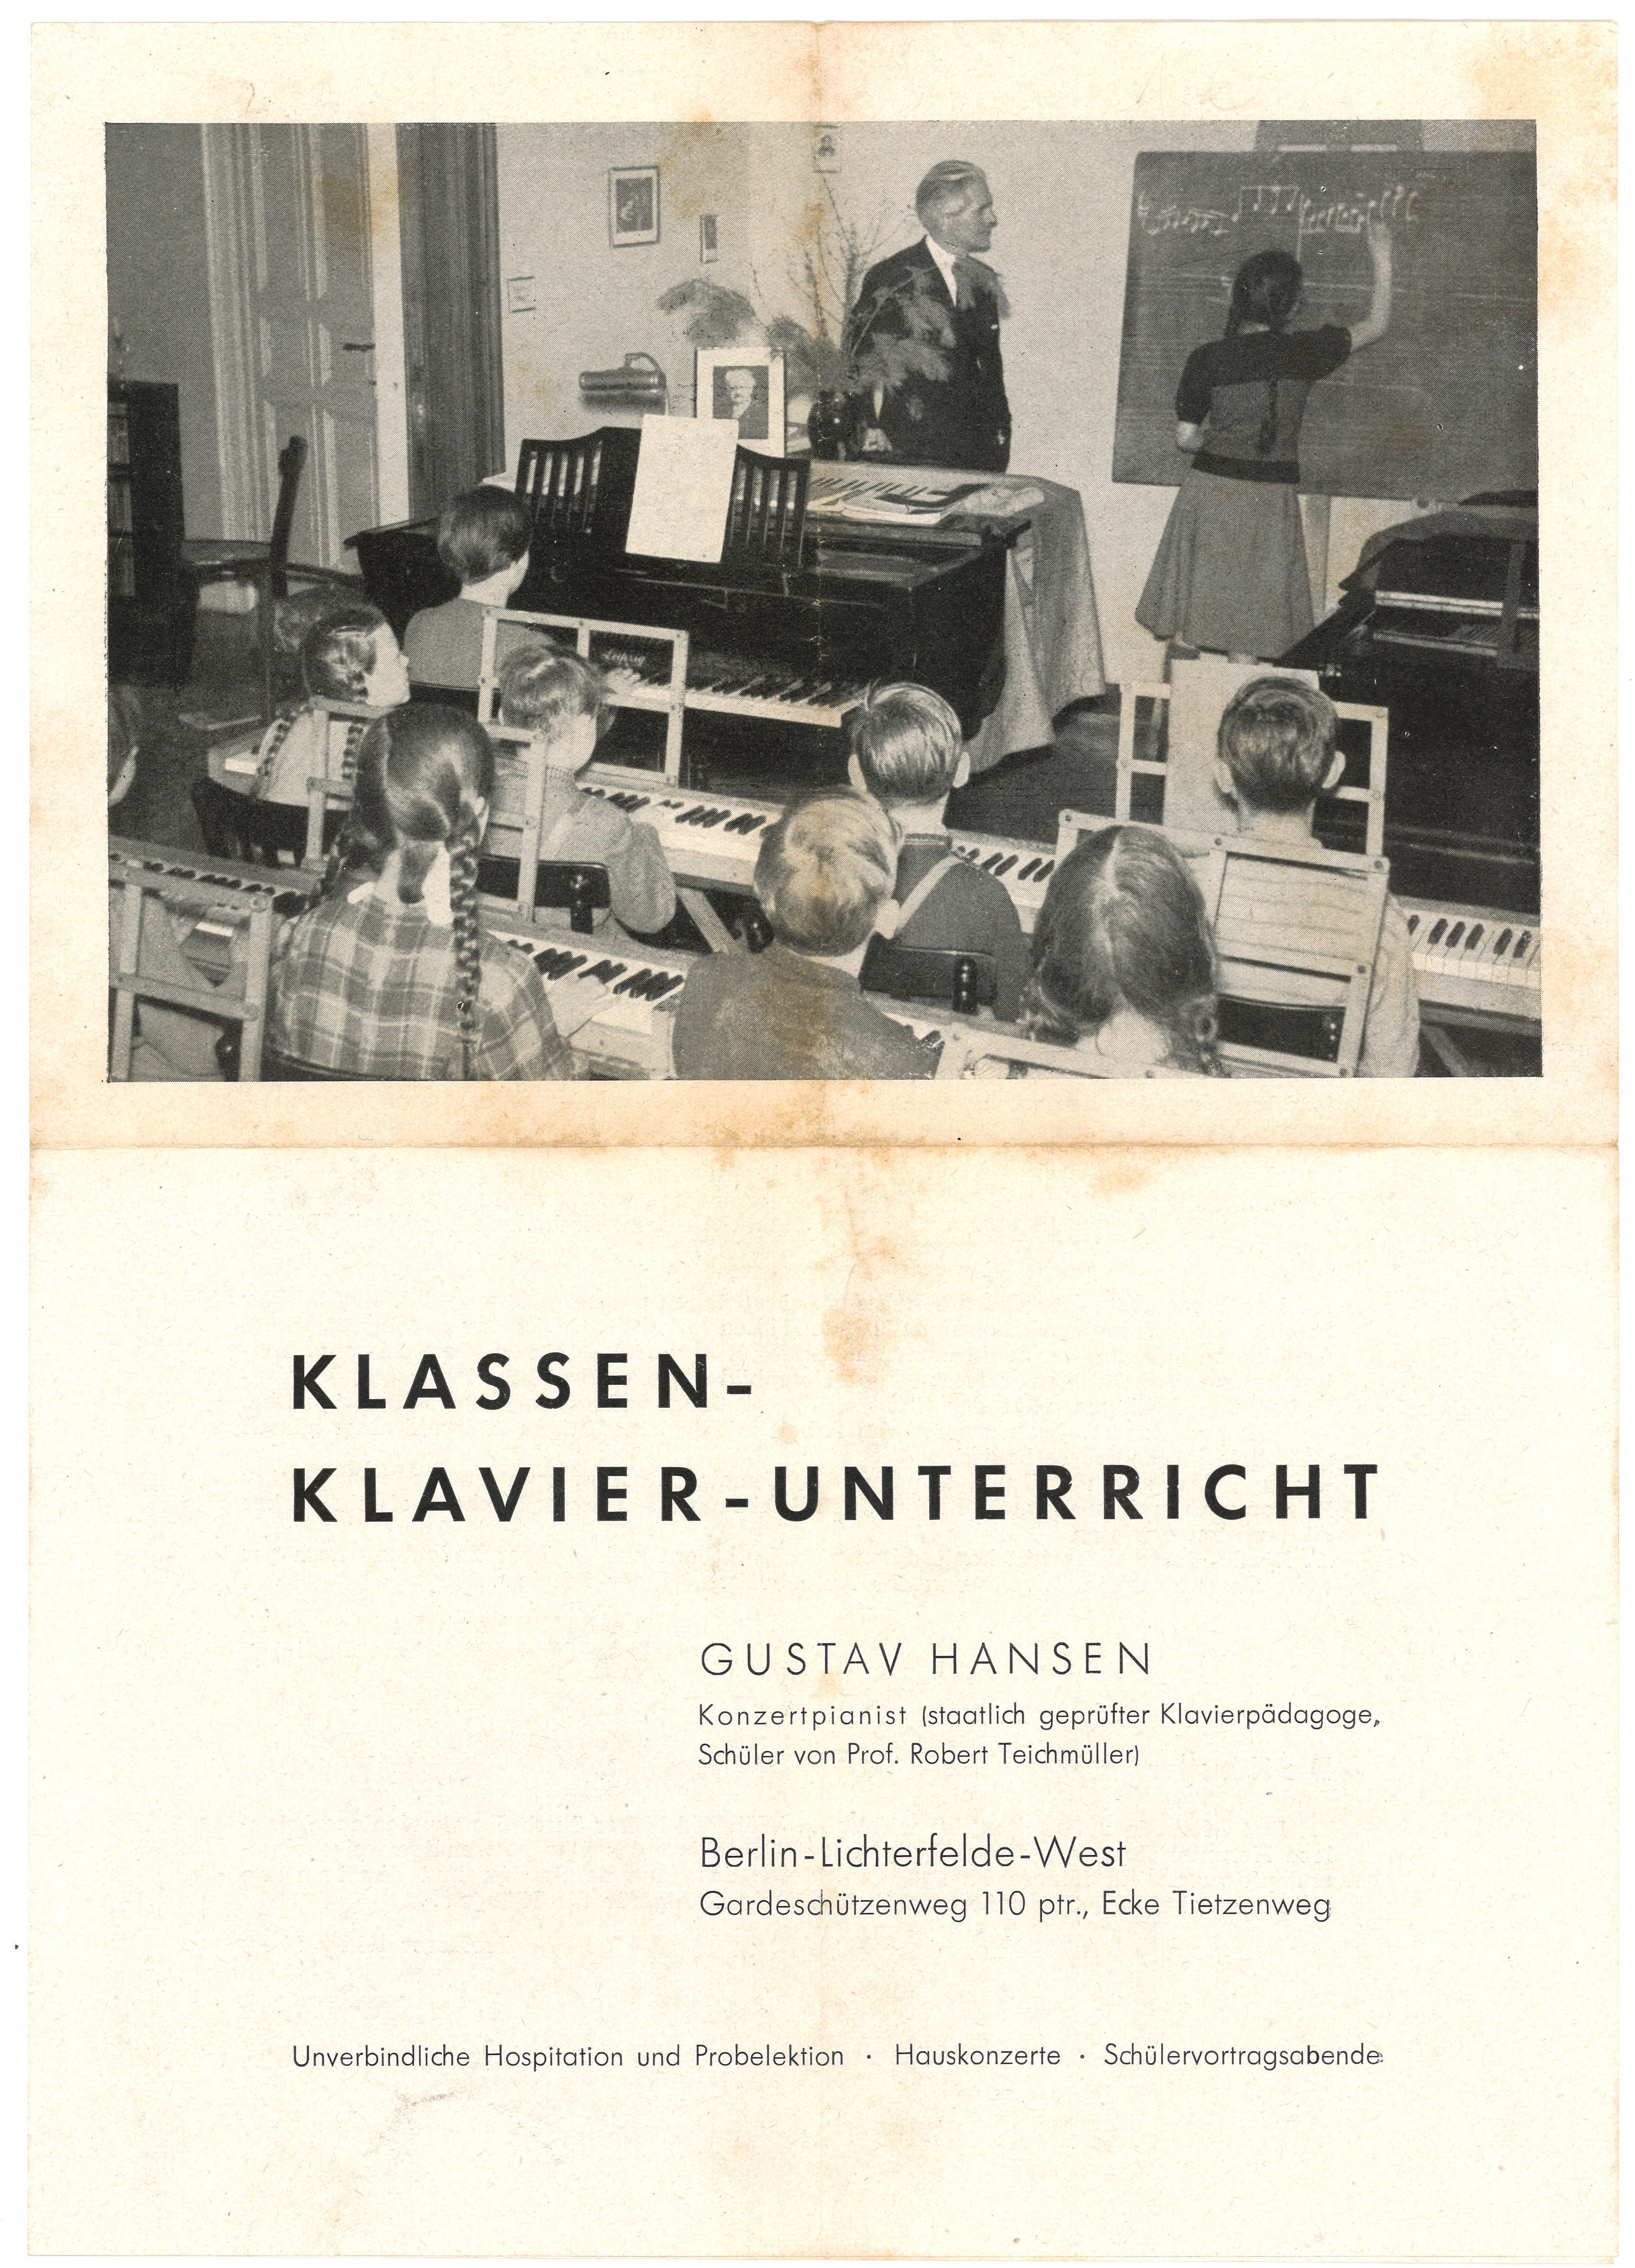 Werbeprospekt von Gustav Hansen fü Klassen-Klavier-Unterricht in Berlin-Lichterfelde (um 1955) (Landesgeschichtliche Vereinigung für die Mark Brandenburg e.V., Archiv CC BY)